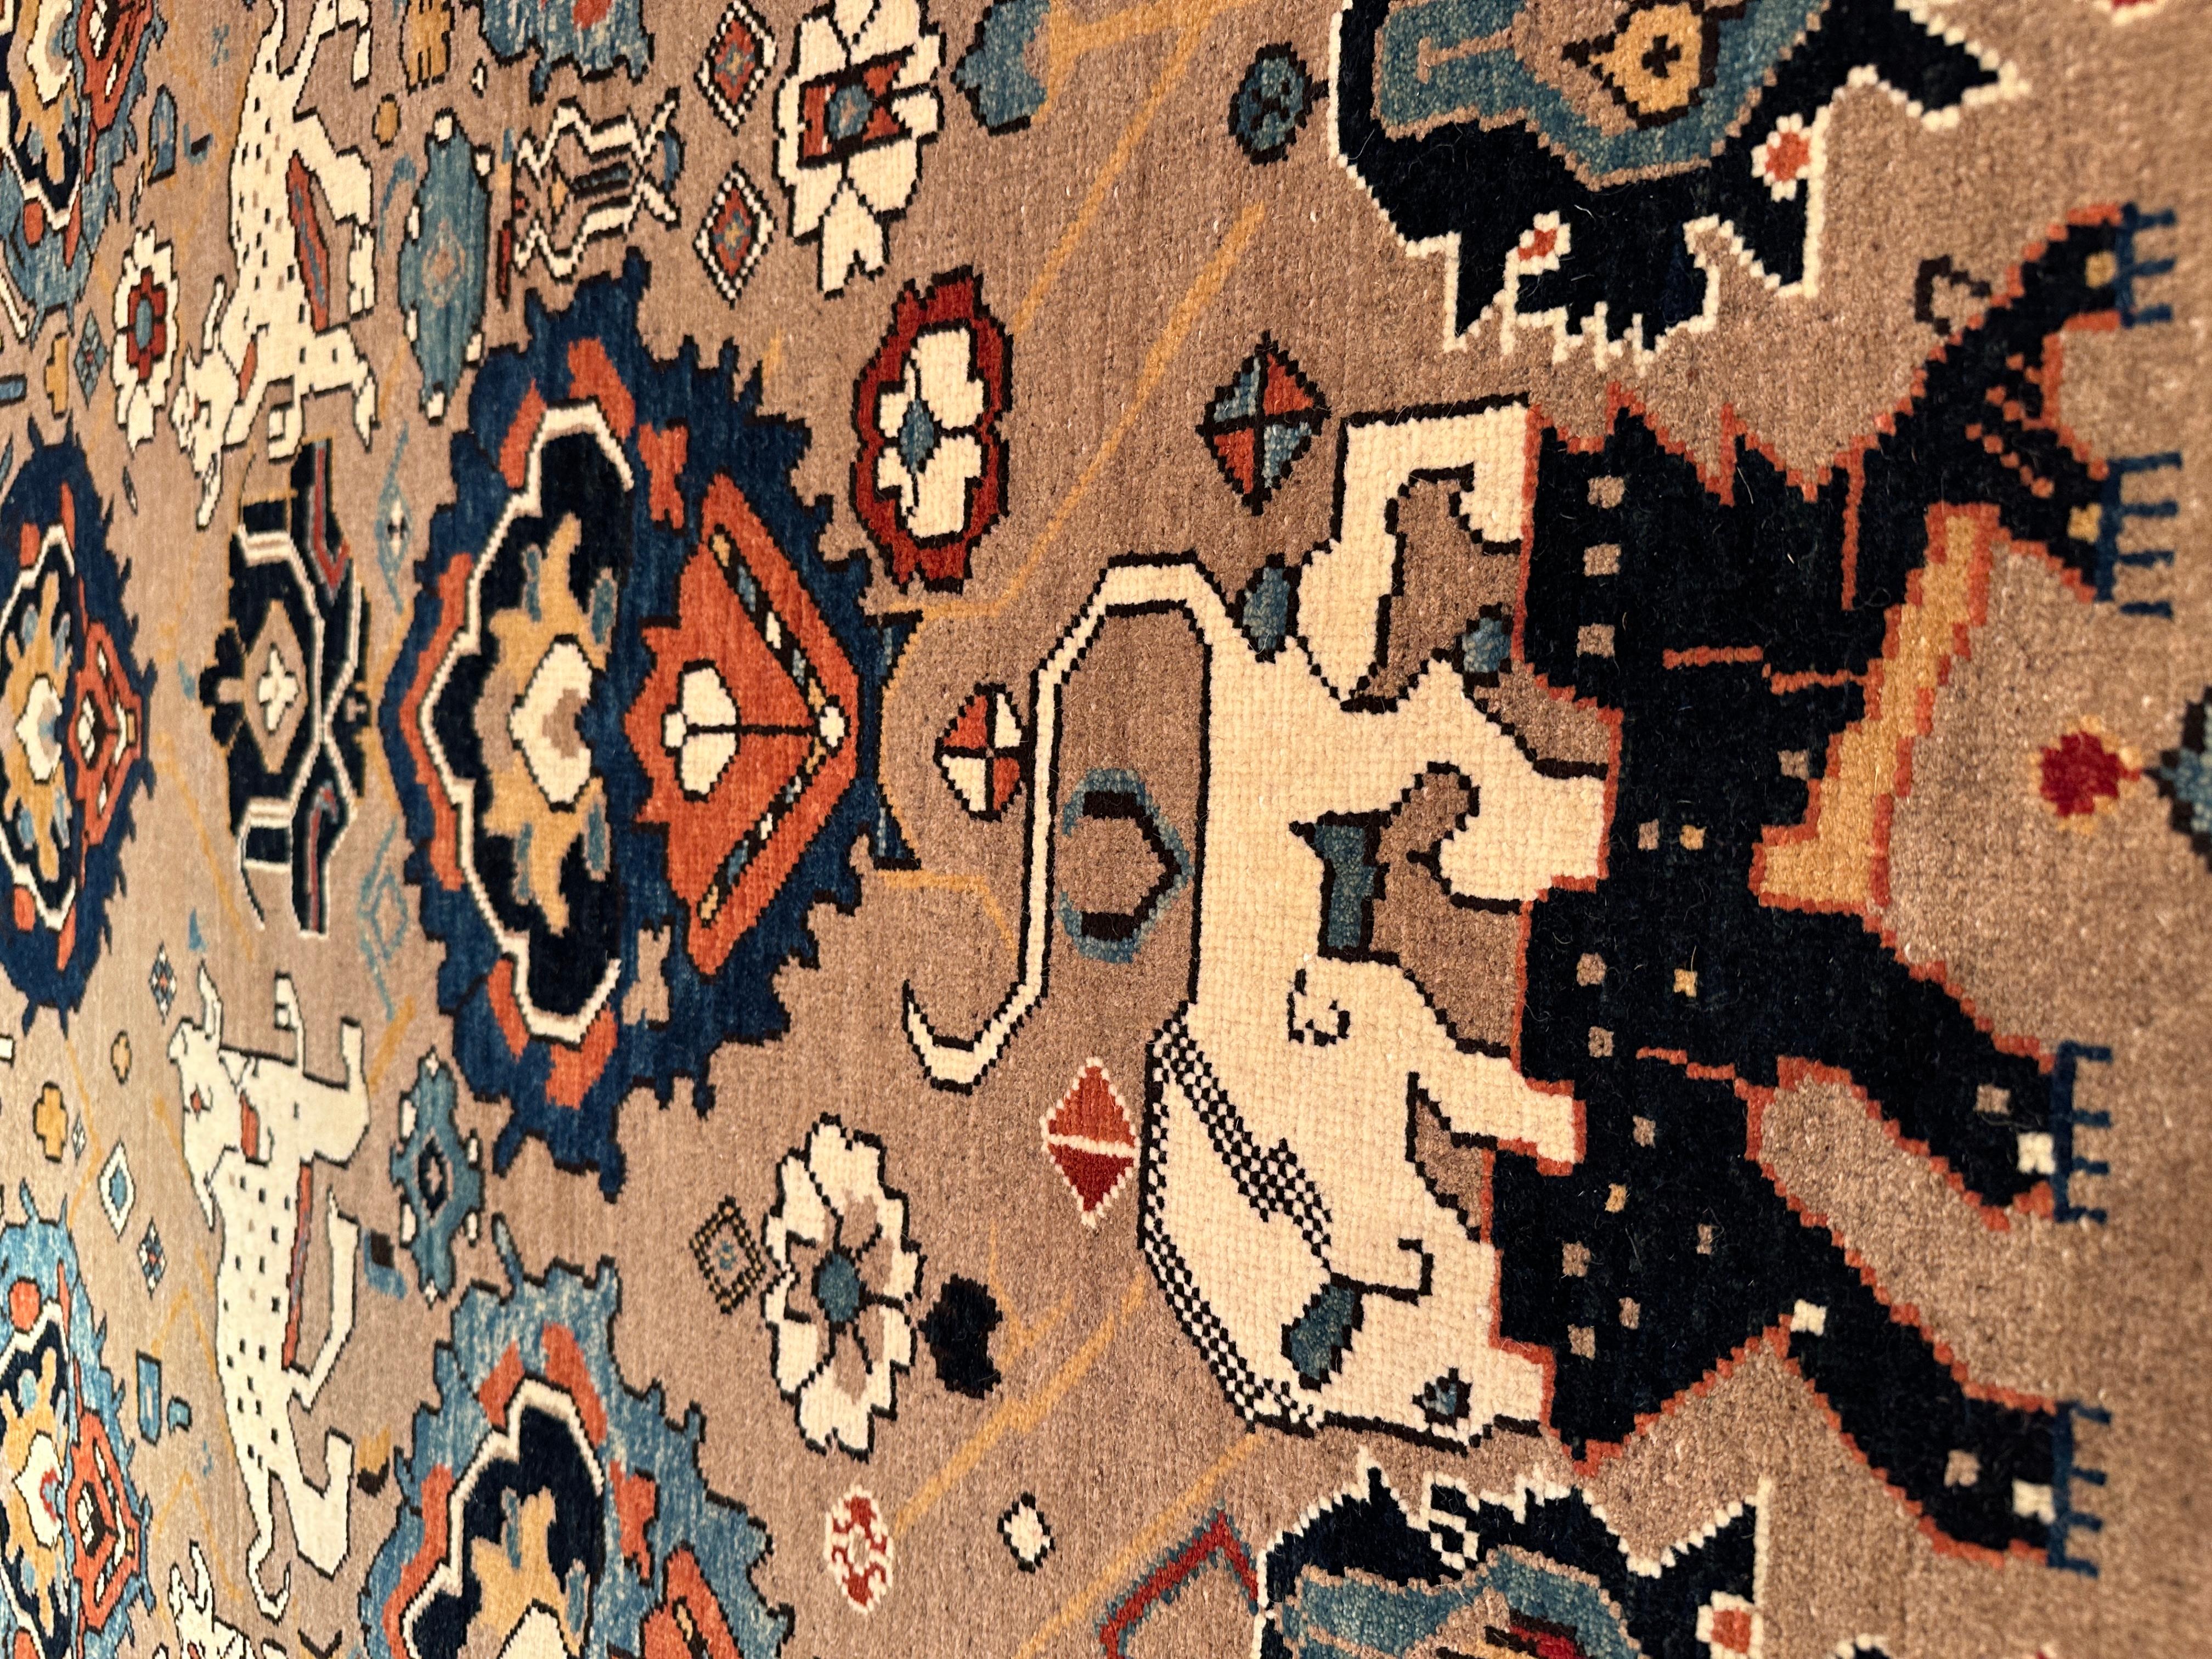 Die Quelle des Teppichs stammt aus dem Buch Orient Star - A Carpet Collection, E. Heinrich Kirchheim, Hali Publications Ltd, 1993 nr.81. Dies ist ein Beispiel für eine der faszinierendsten Design-Gruppen von Teppichen aus dem Kaukasus und